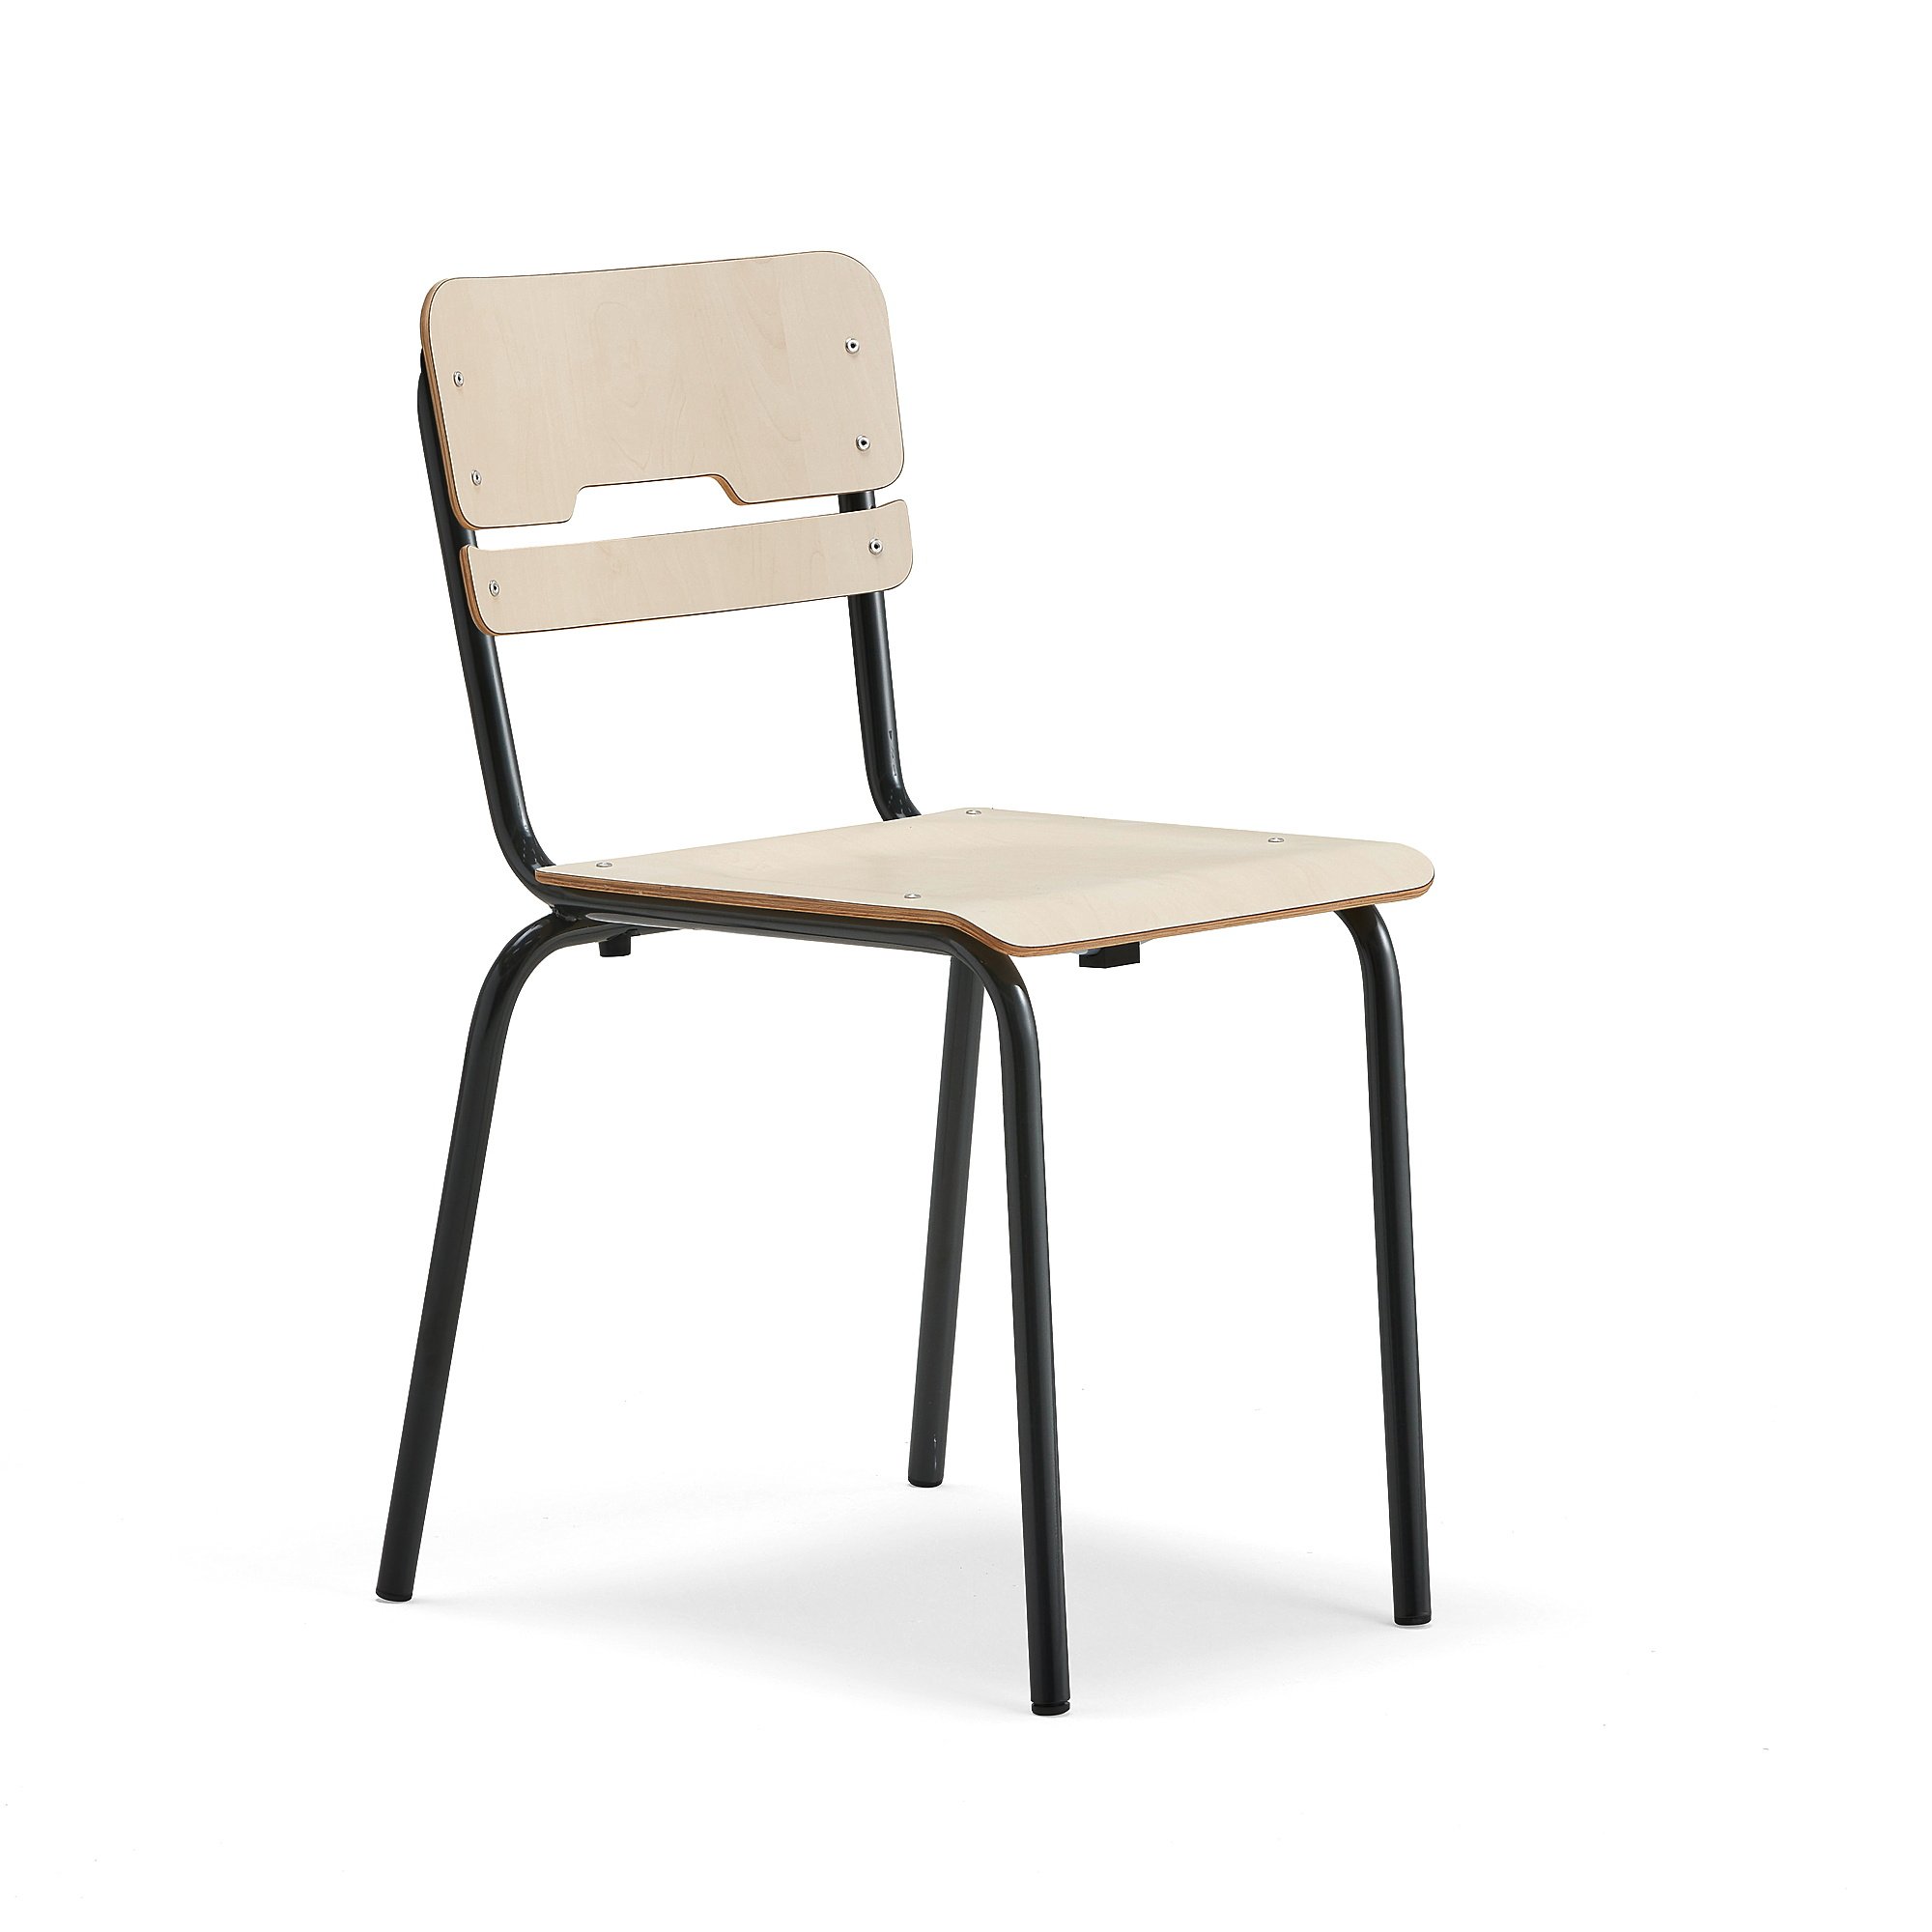 Školní židle SCIENTIA, sedák 390x390 mm, výška 460 mm, antracitová/bříza